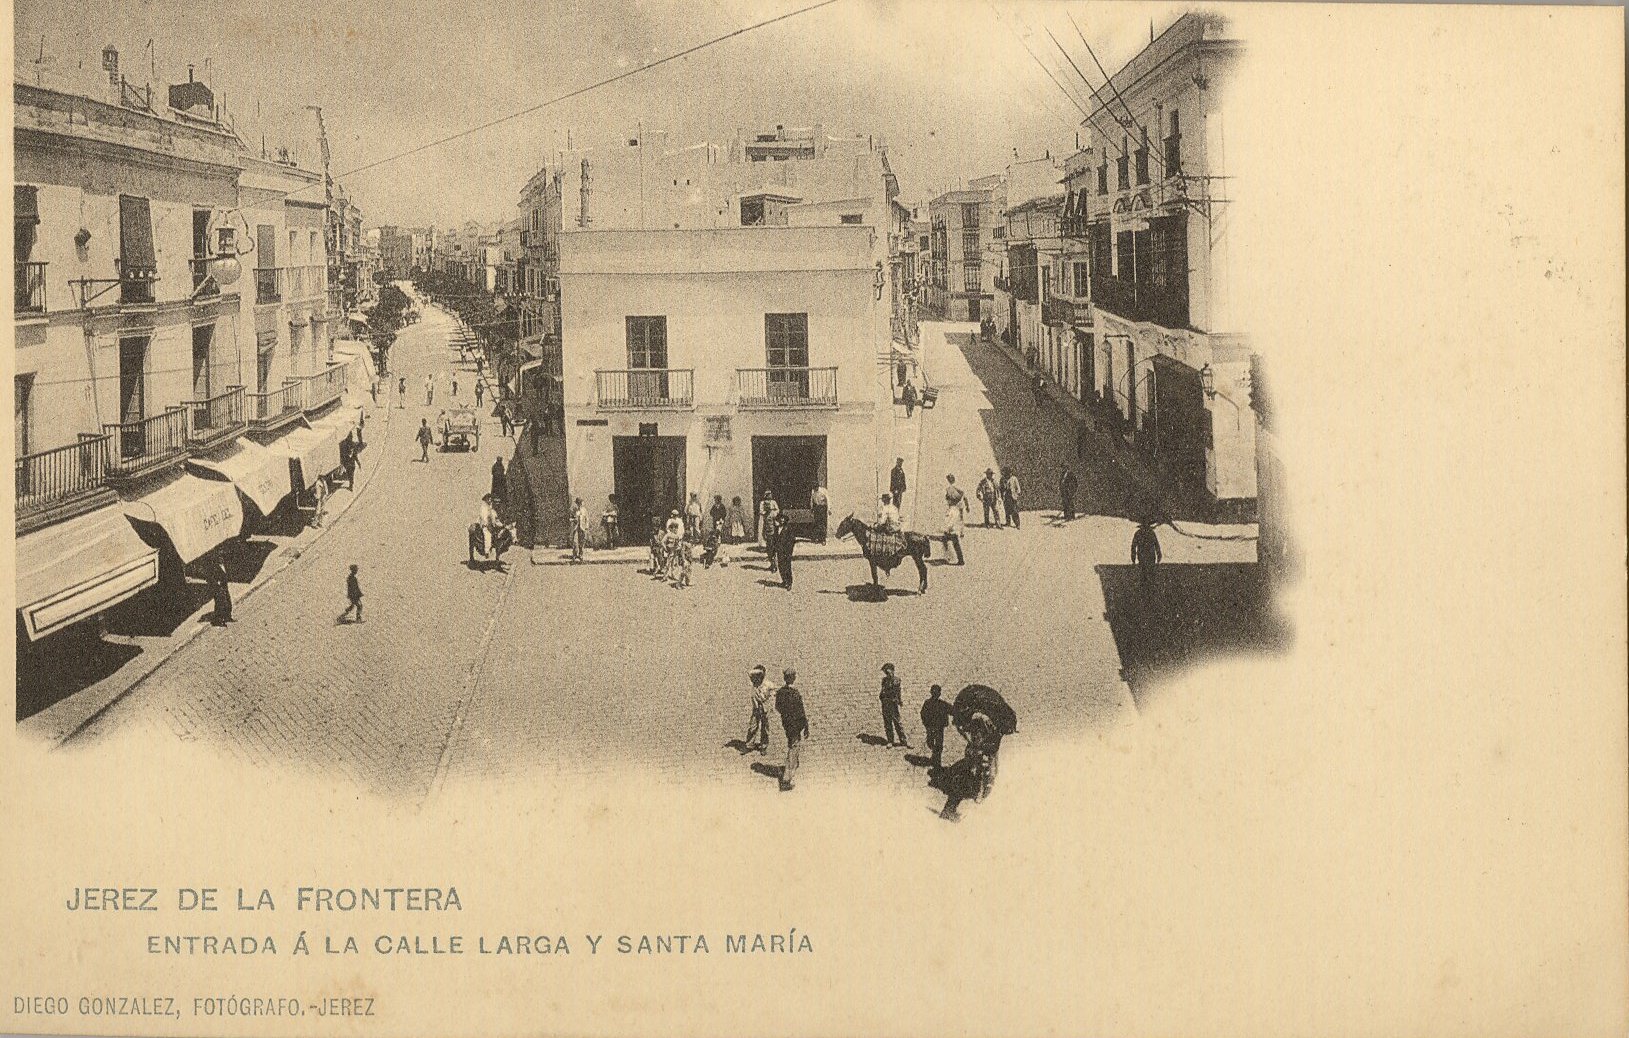 JEREZ DE LA FRONTERA: Entrada a la calle Larga y Santa María.1901 (DJ07655)